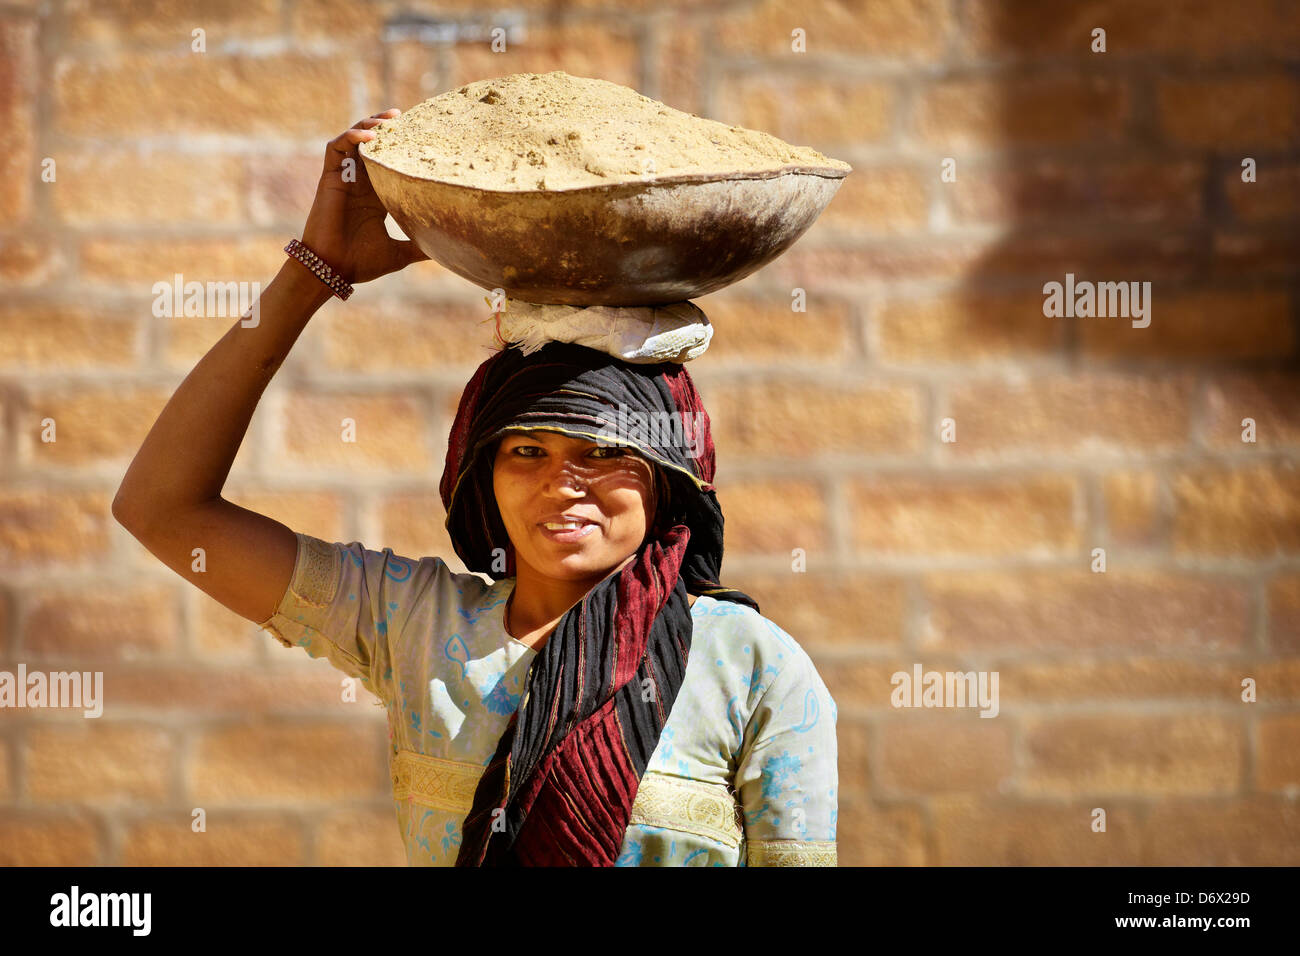 Scena di strada - Ritratto di un indù in India donna sorridente che trasportano un cestello sul suo capo, Jaisalmer, India Foto Stock